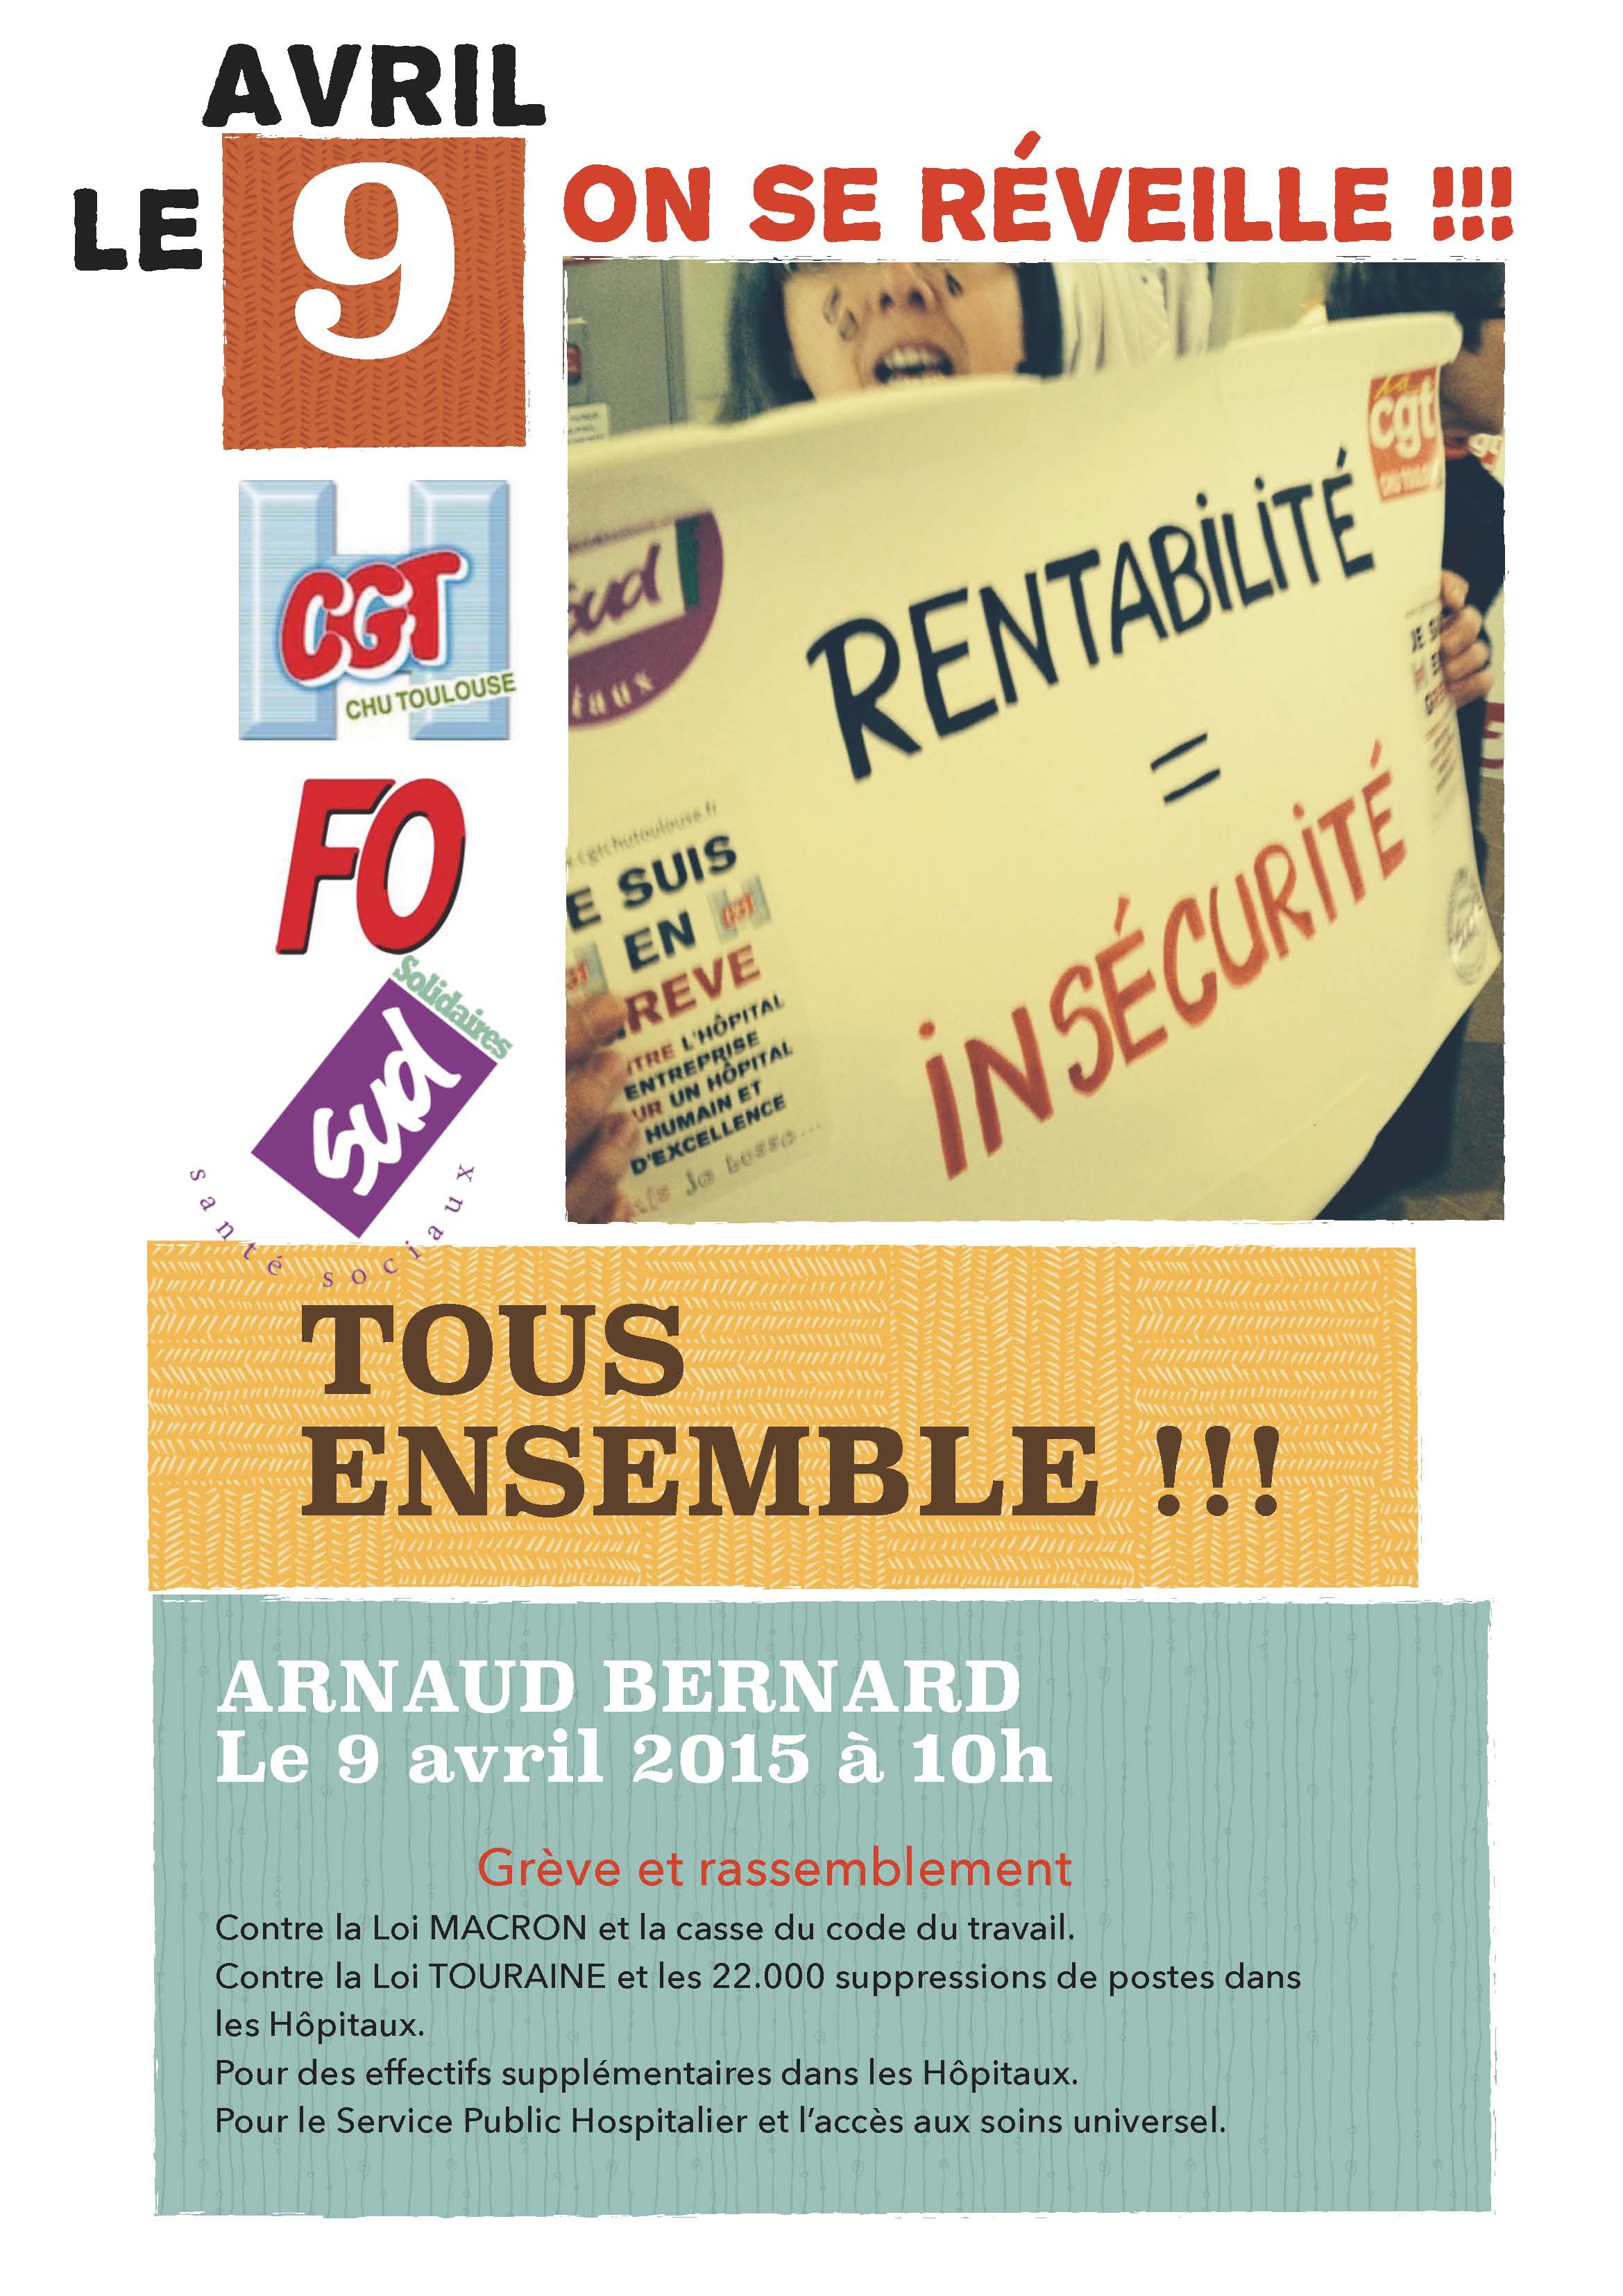 9 avril : Préavis de grève des personnels de tous les services du CHU de Toulouse